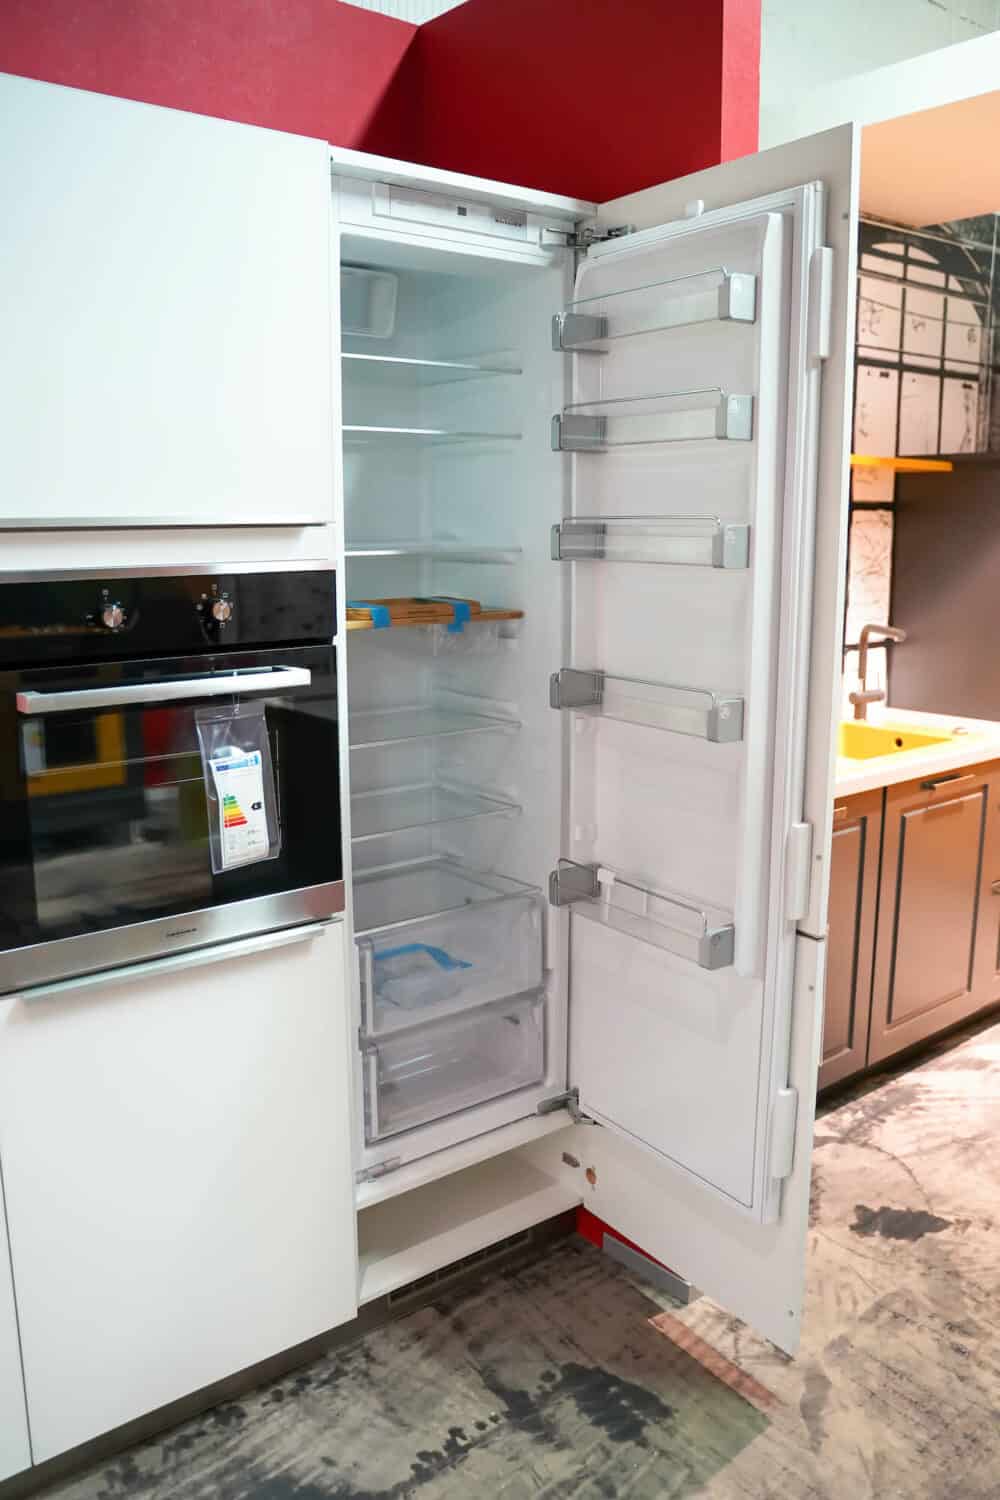 KitchenAid geräumiger Kühlschrank und Oranier Backofen